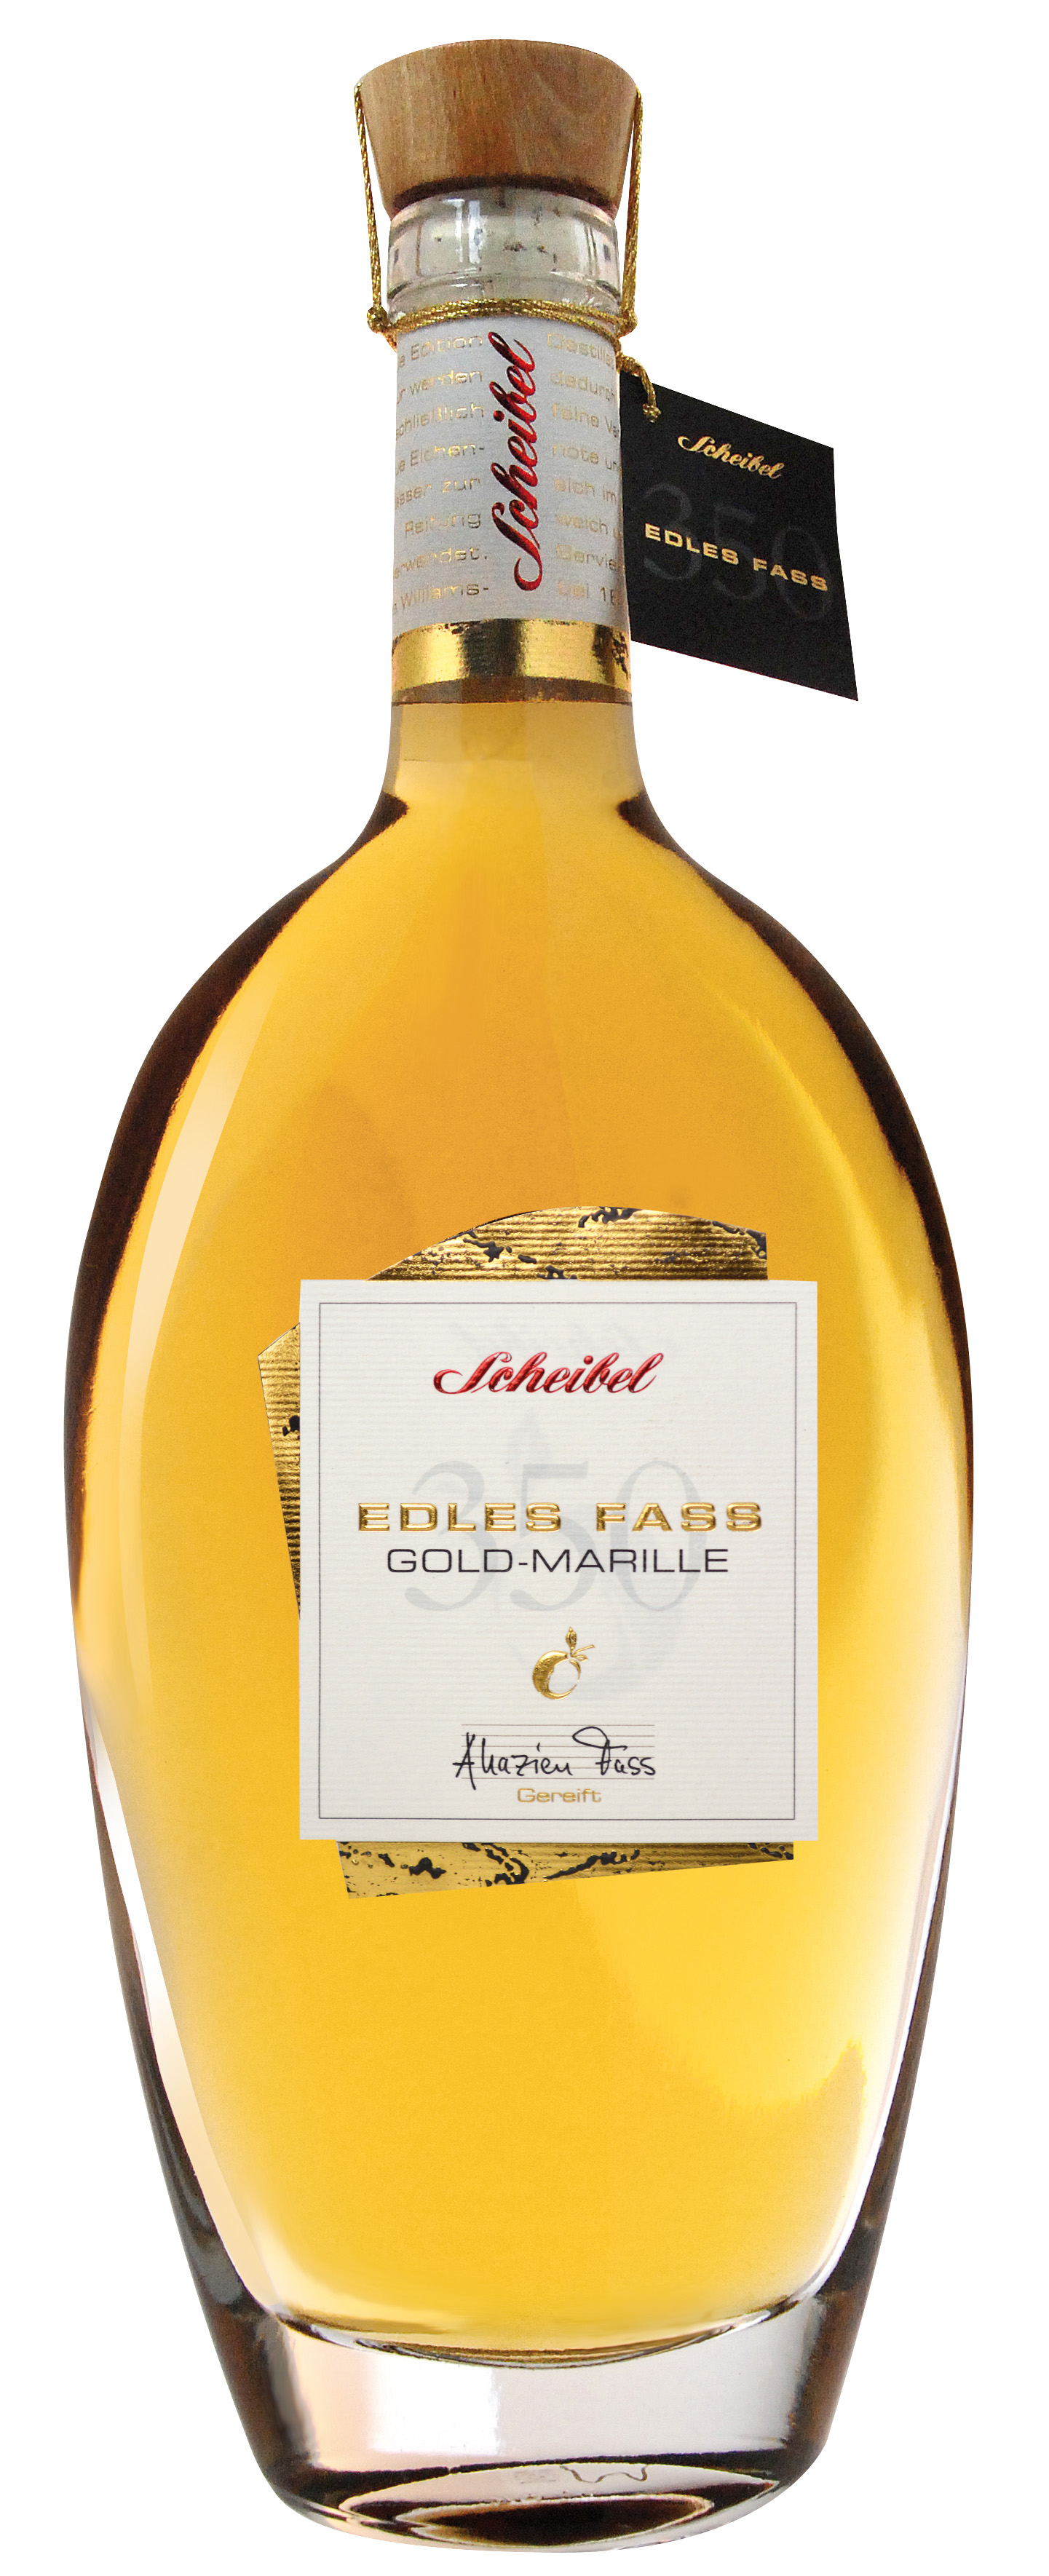 Scheibel Gold Marille Edles Fass 41% Vol. 0,7l